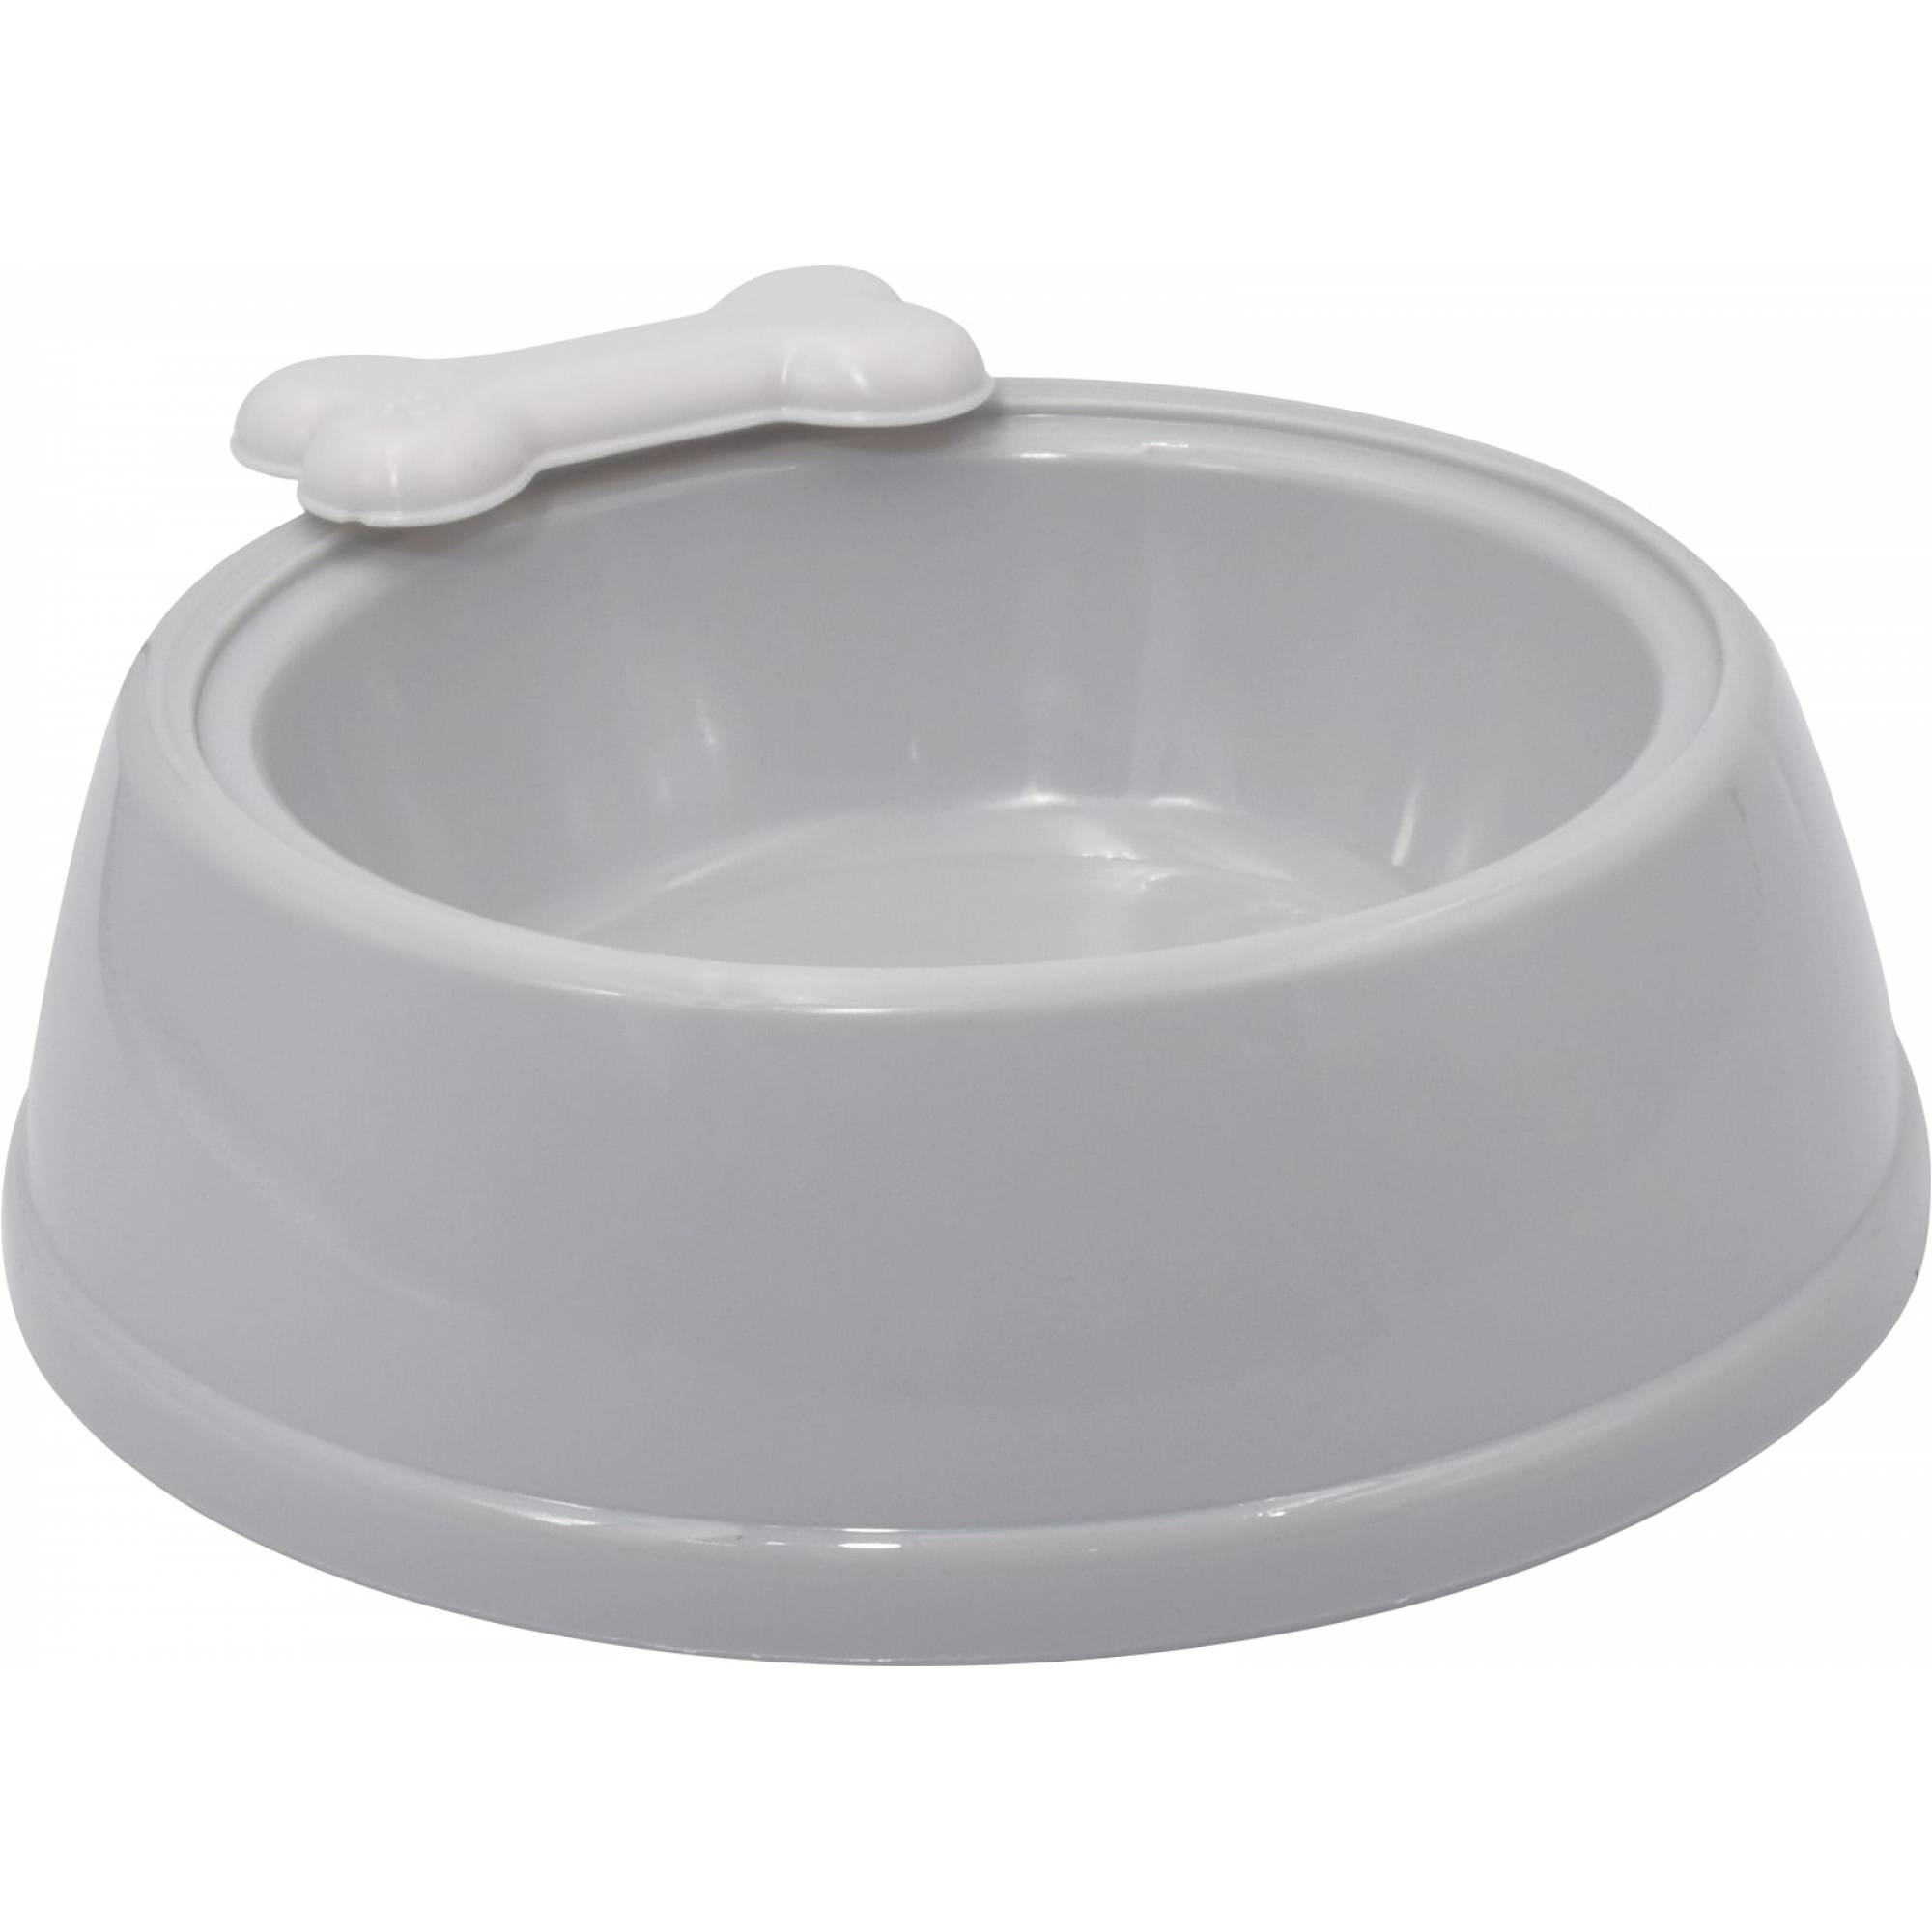 Pet Protect - Pet Large Plastic Bowl 23.5x20x7cm (Grey)